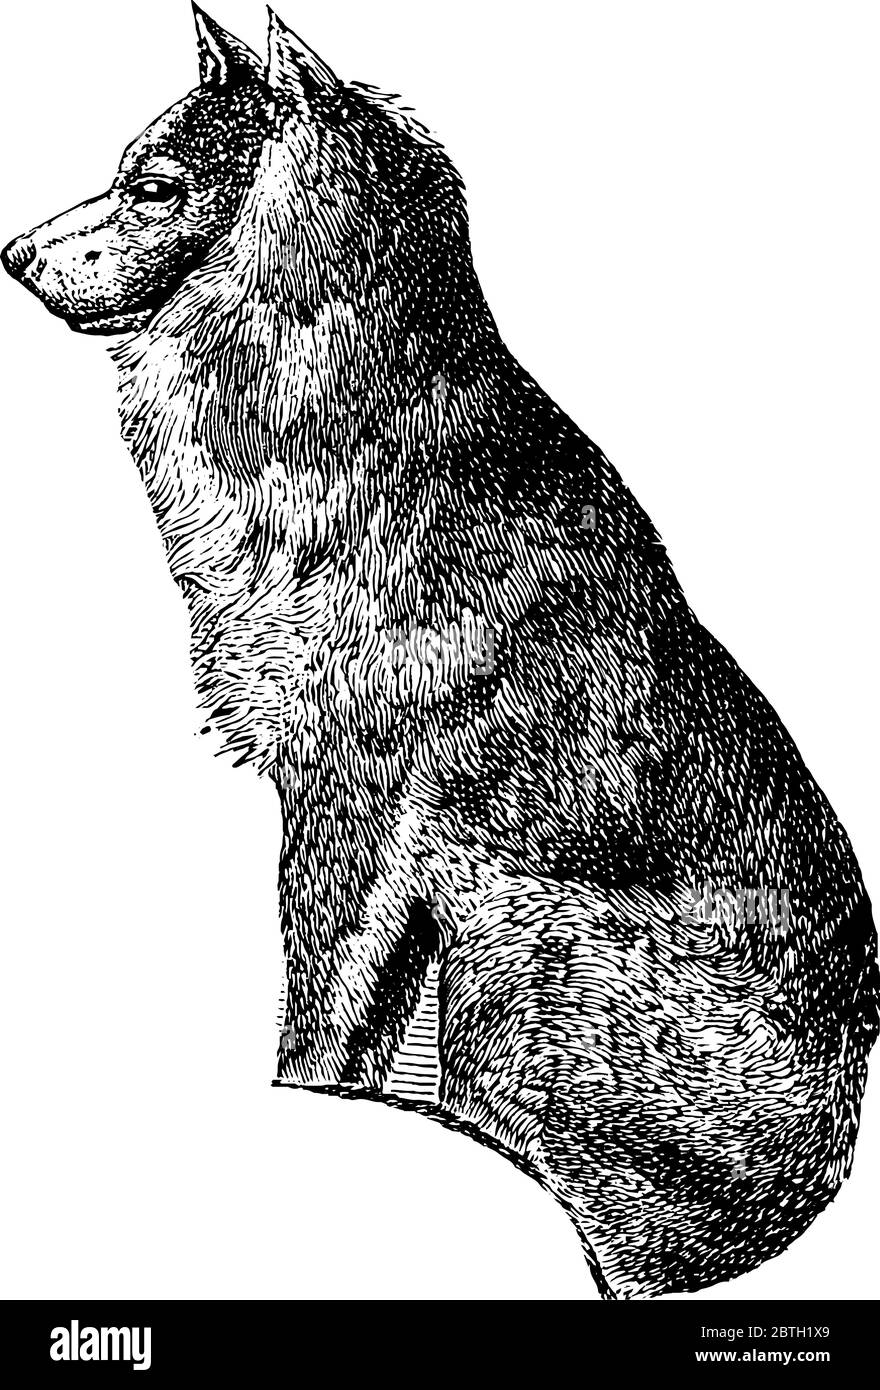 Il cane di Eskimo è razza di cane compagno che ha vita 13-15 anni, disegno di linea vintage o illustrazione di incisione. Illustrazione Vettoriale